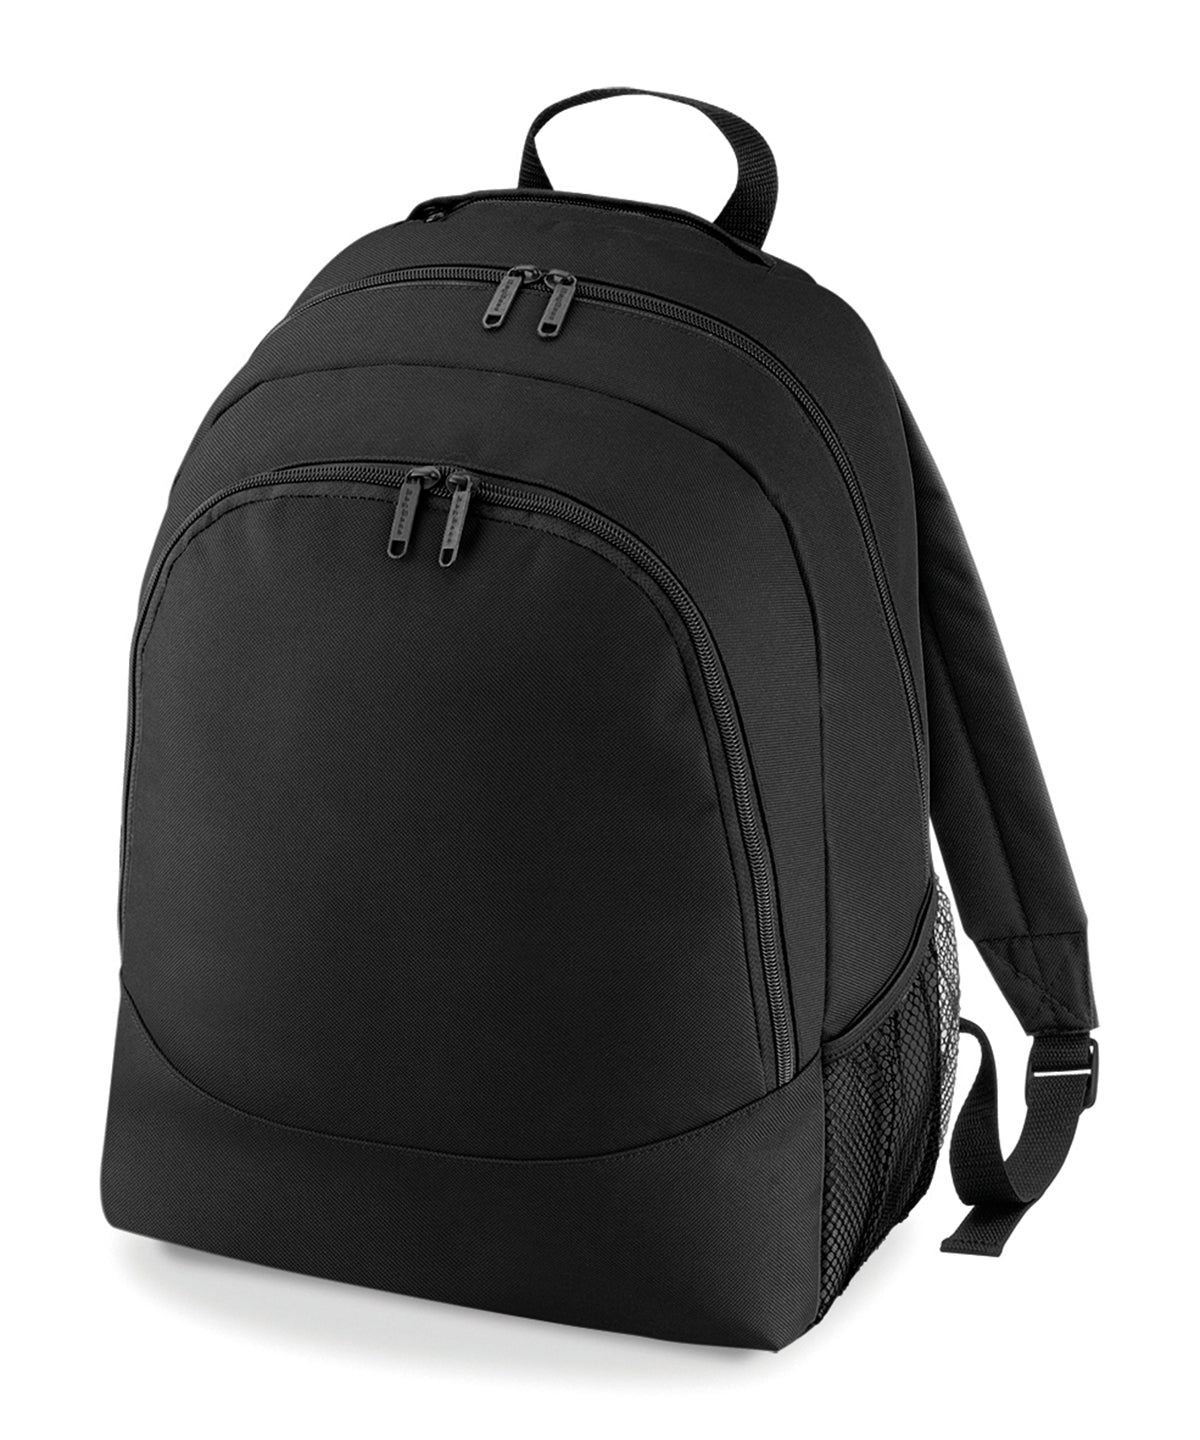 Personalised Bags - Black Bagbase Universal backpack